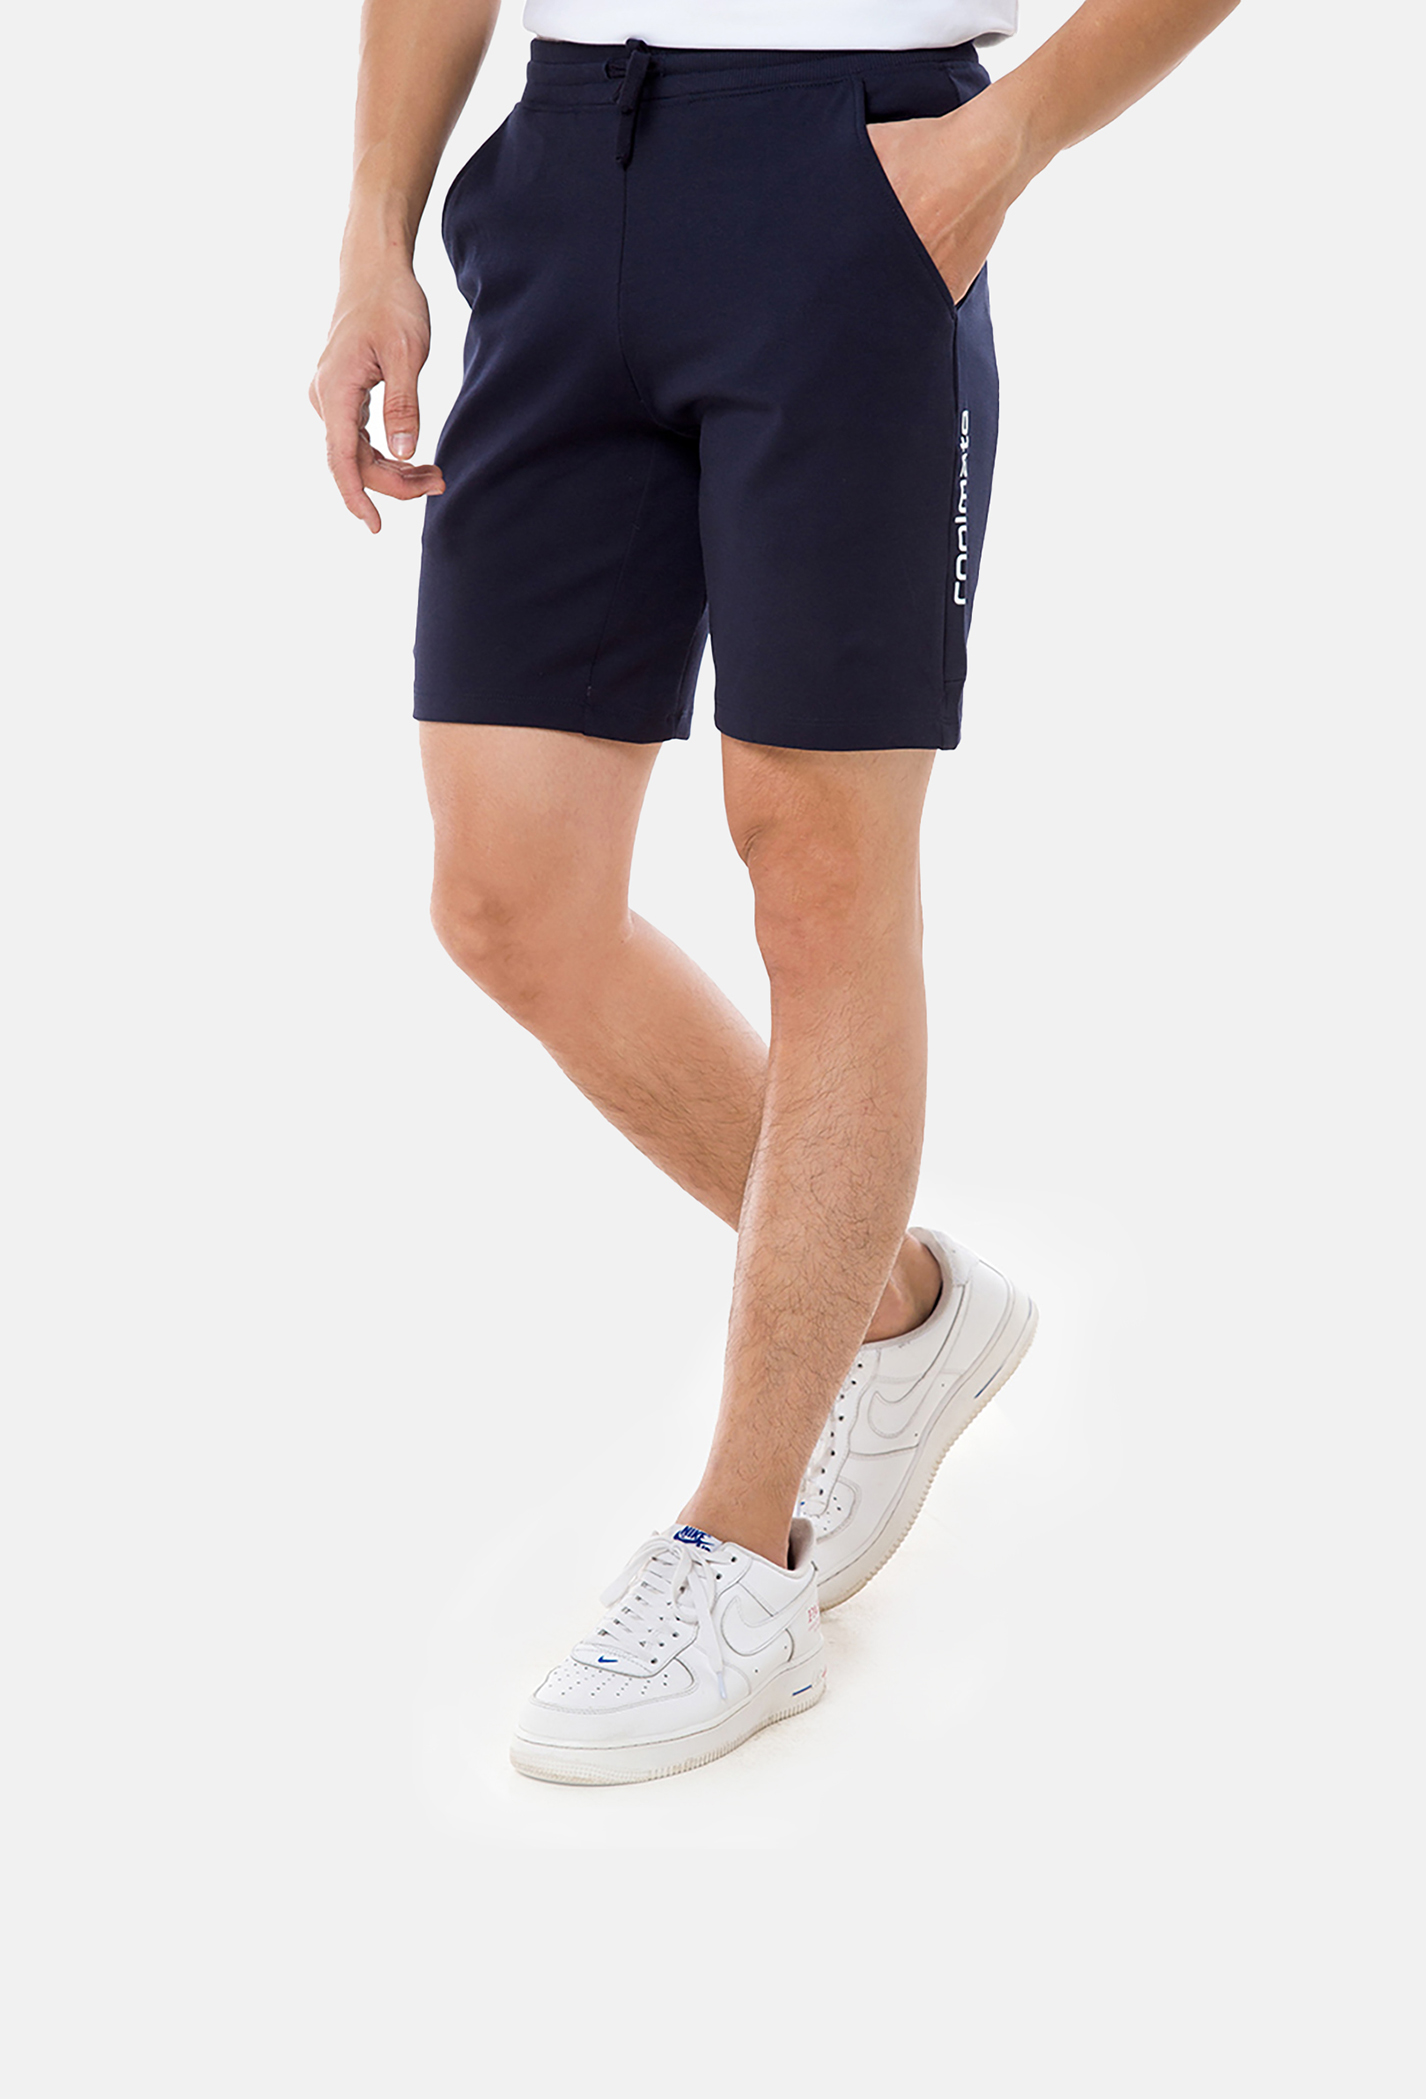 OUTLET - Quần Shorts nam Easy Active - thoải mái và đa năng  